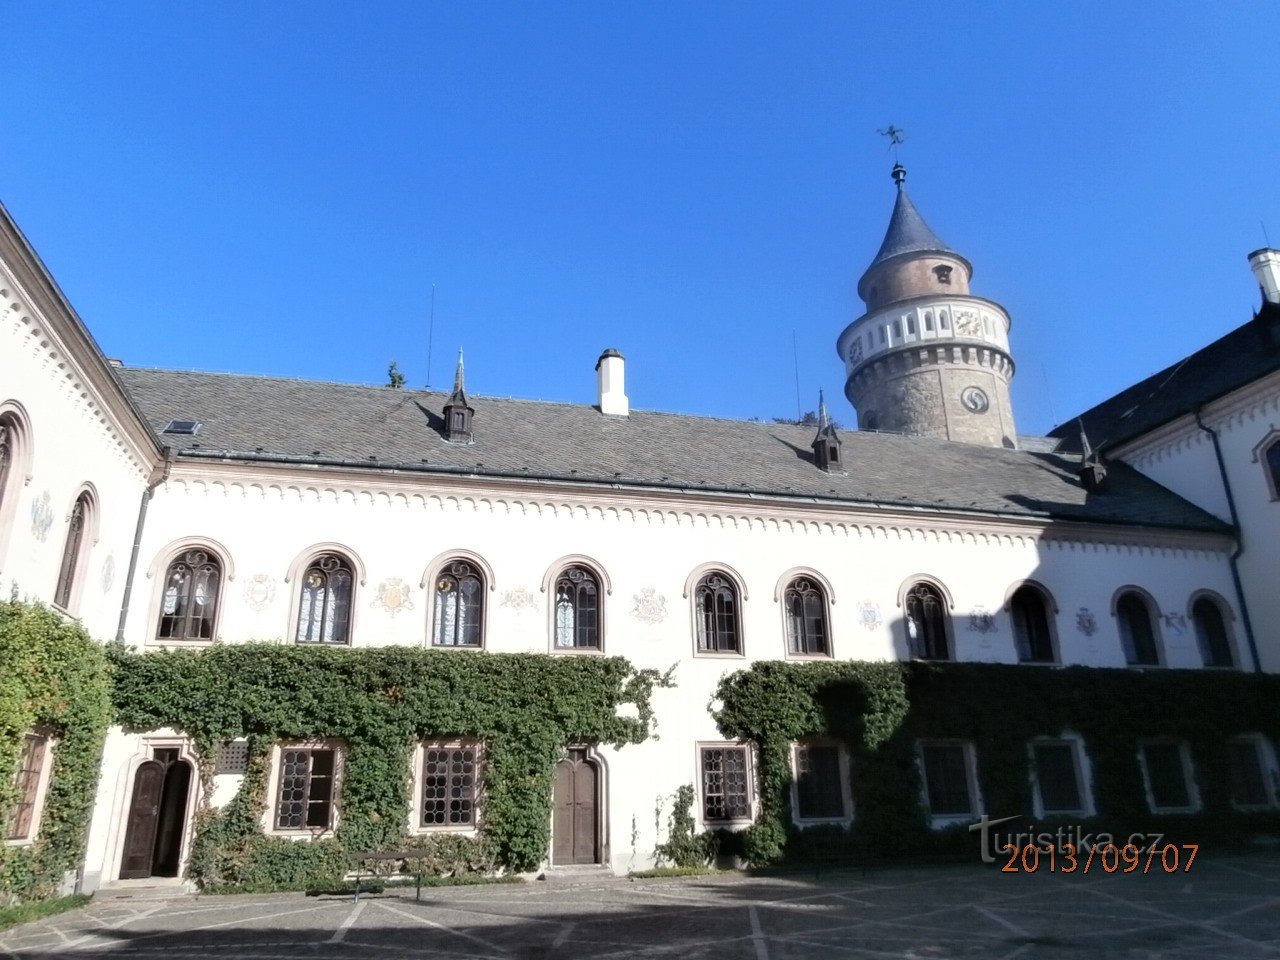 Château romantique Sychrov